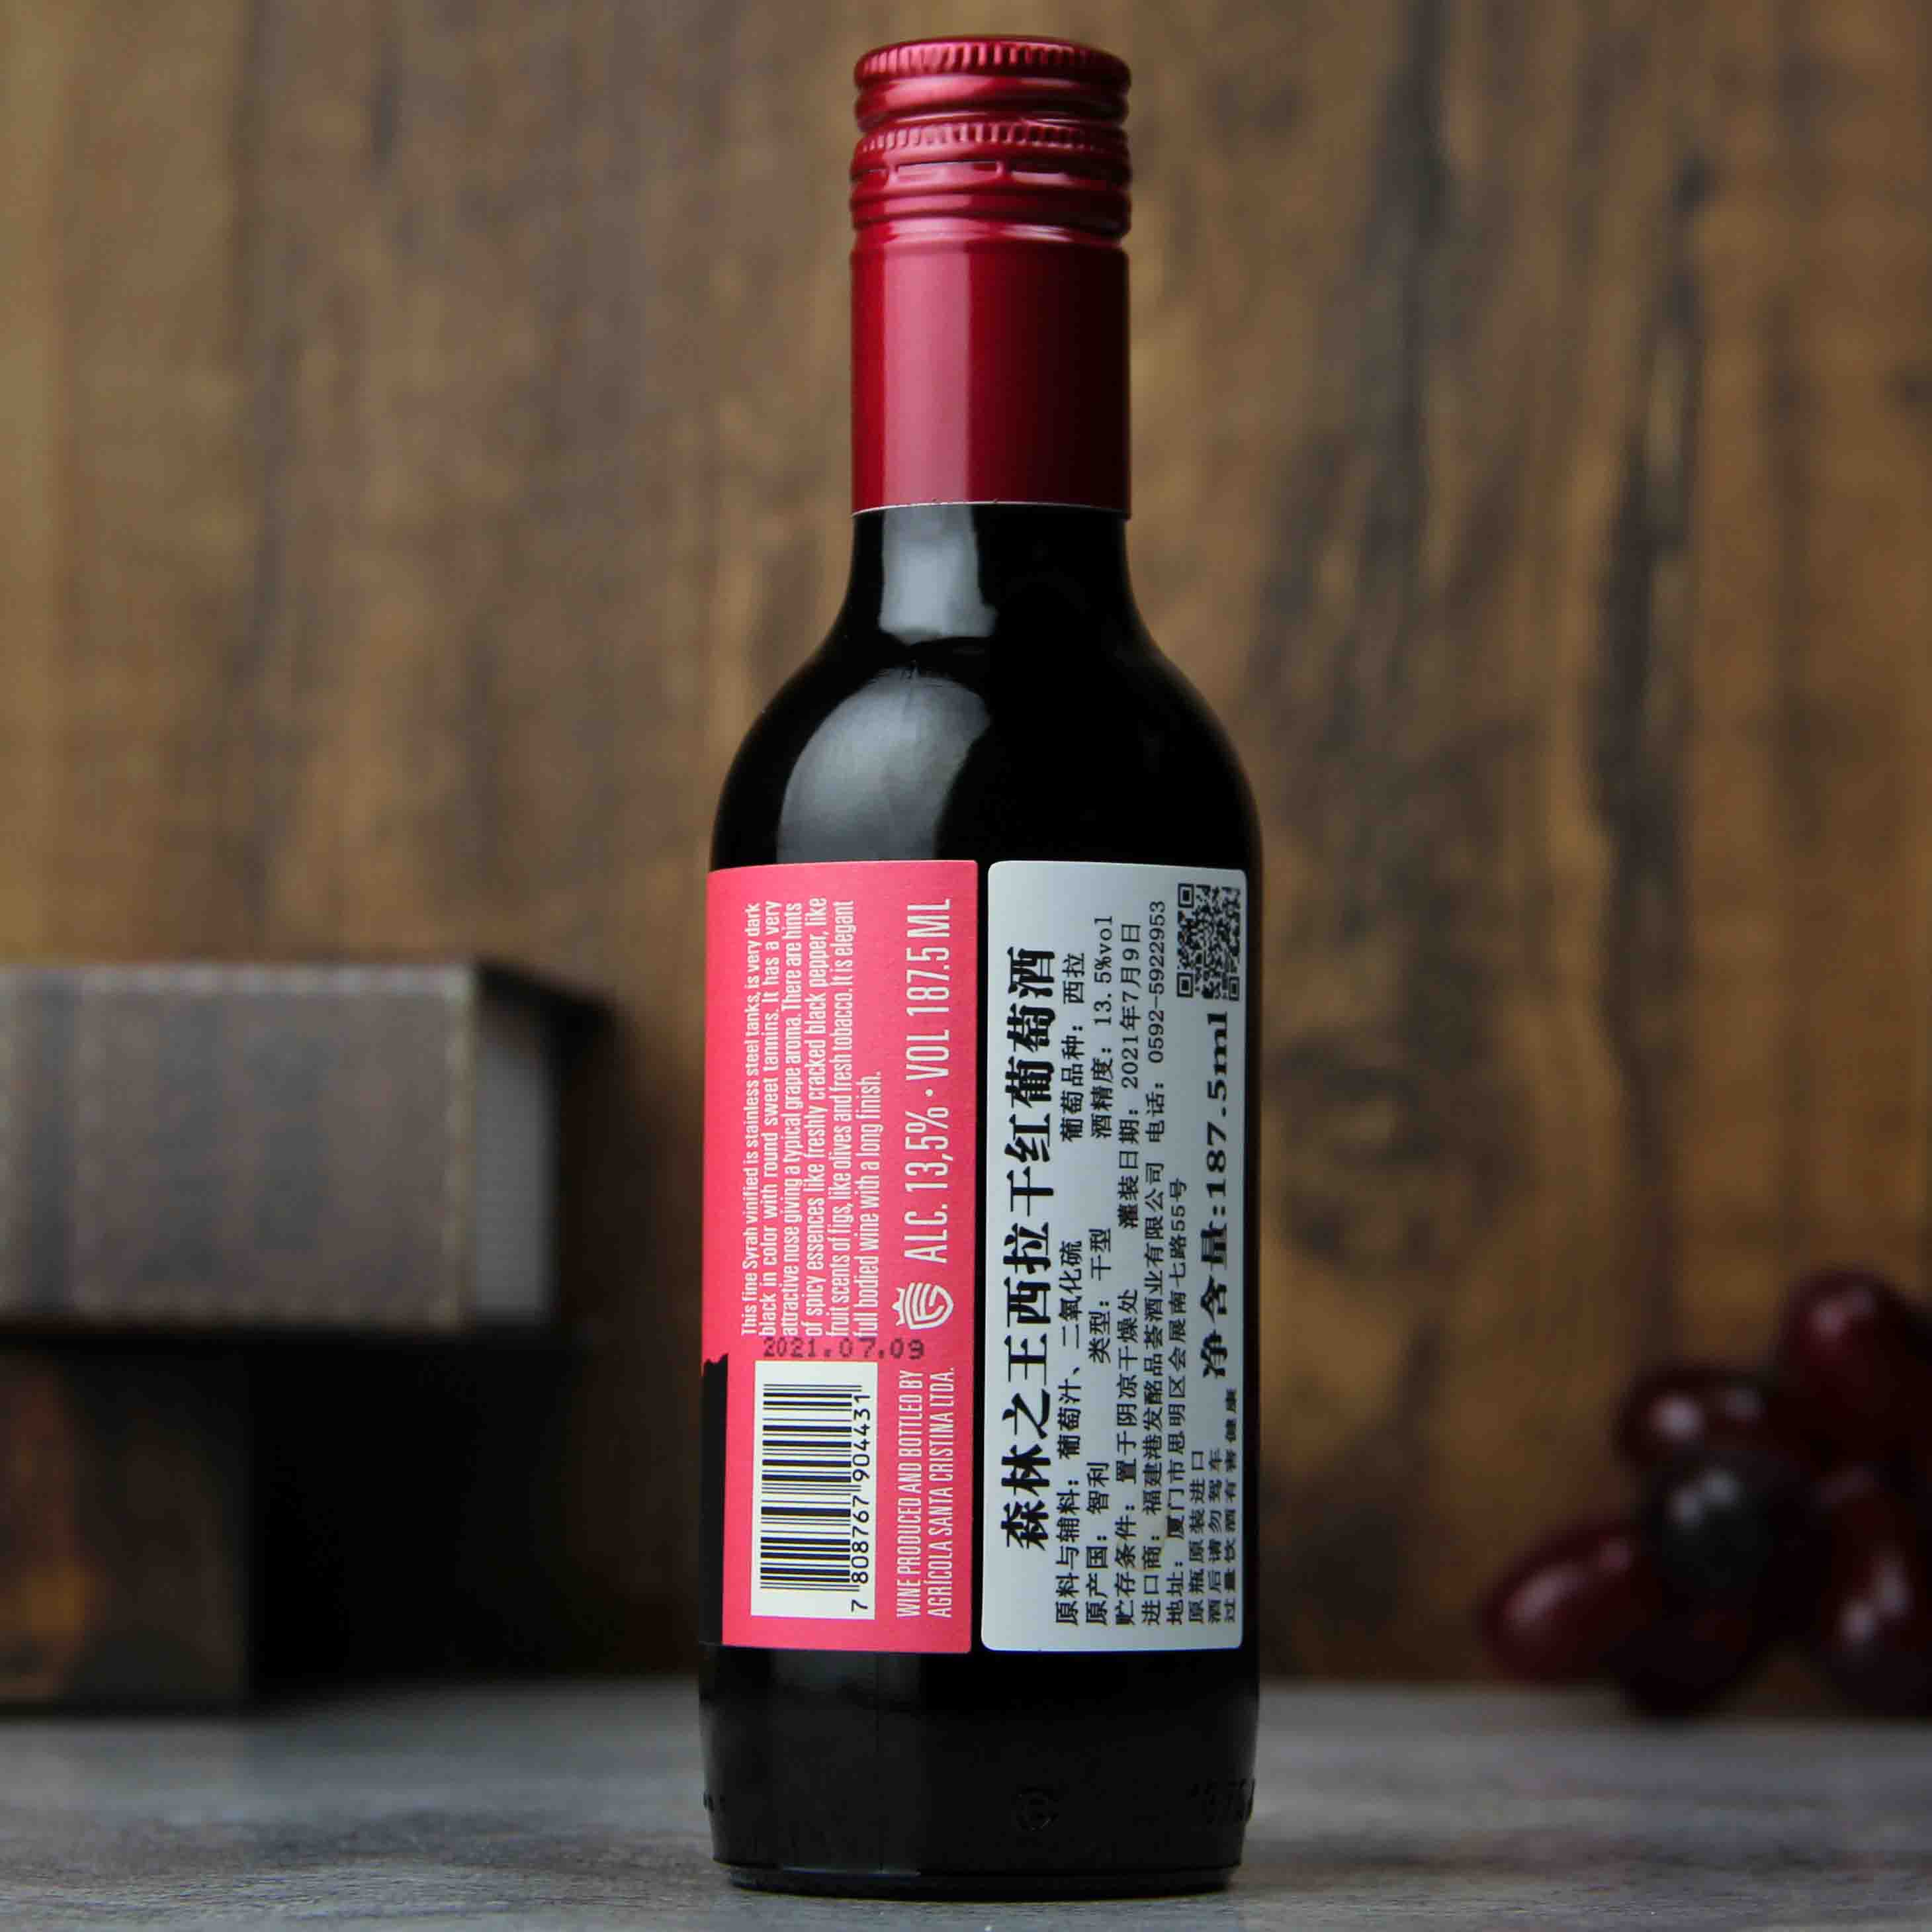 智利拉佩尔谷森林之王经典西拉干红葡萄酒187.5ml